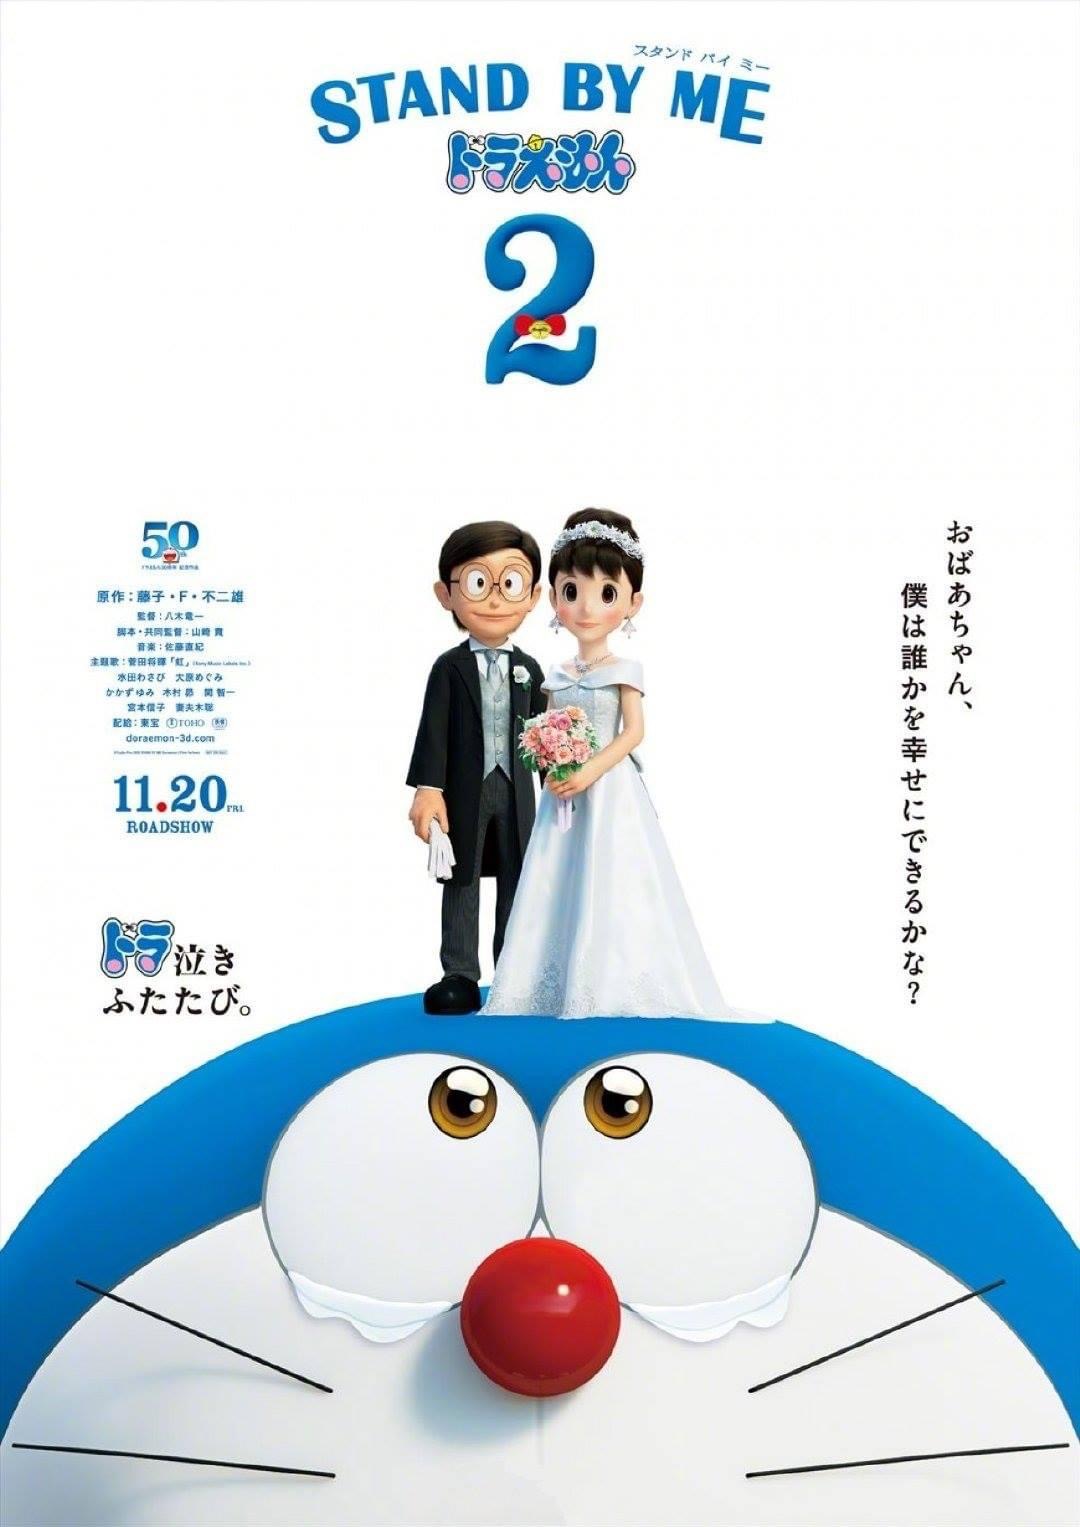 [รีวิว] Stand by Me Doraemon 2: ดราม่าเรียกน้ำตามาต่อเนื่อง